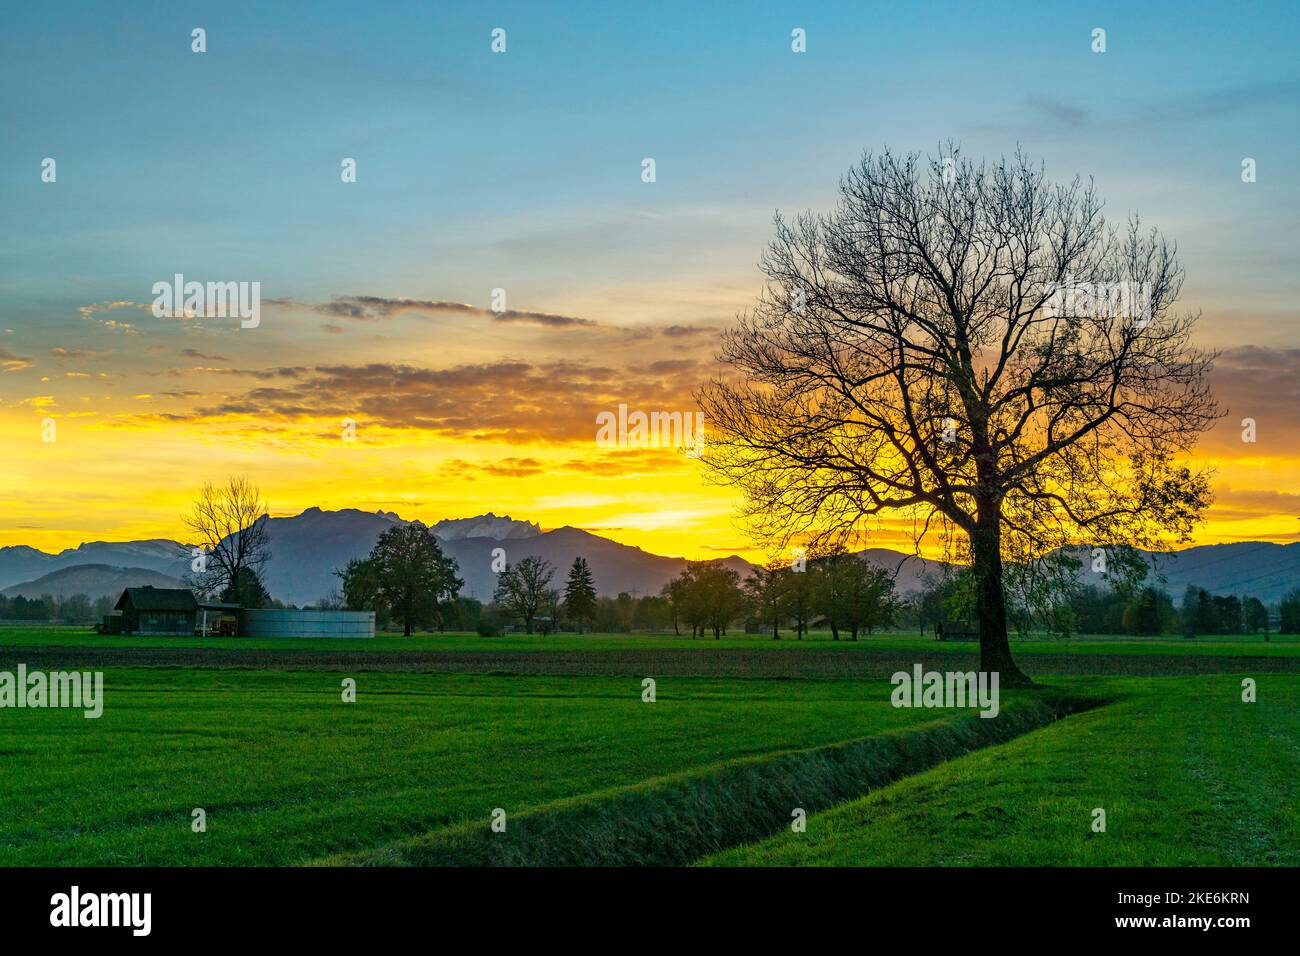 Sonnenuntergang im Rheintal, mit Wiesen und Felder, Bäumen und Schweizer Bergen im Hintergrund. föhn mit Wolken und blau, Gelb, Arancio, roter Himmel Foto Stock